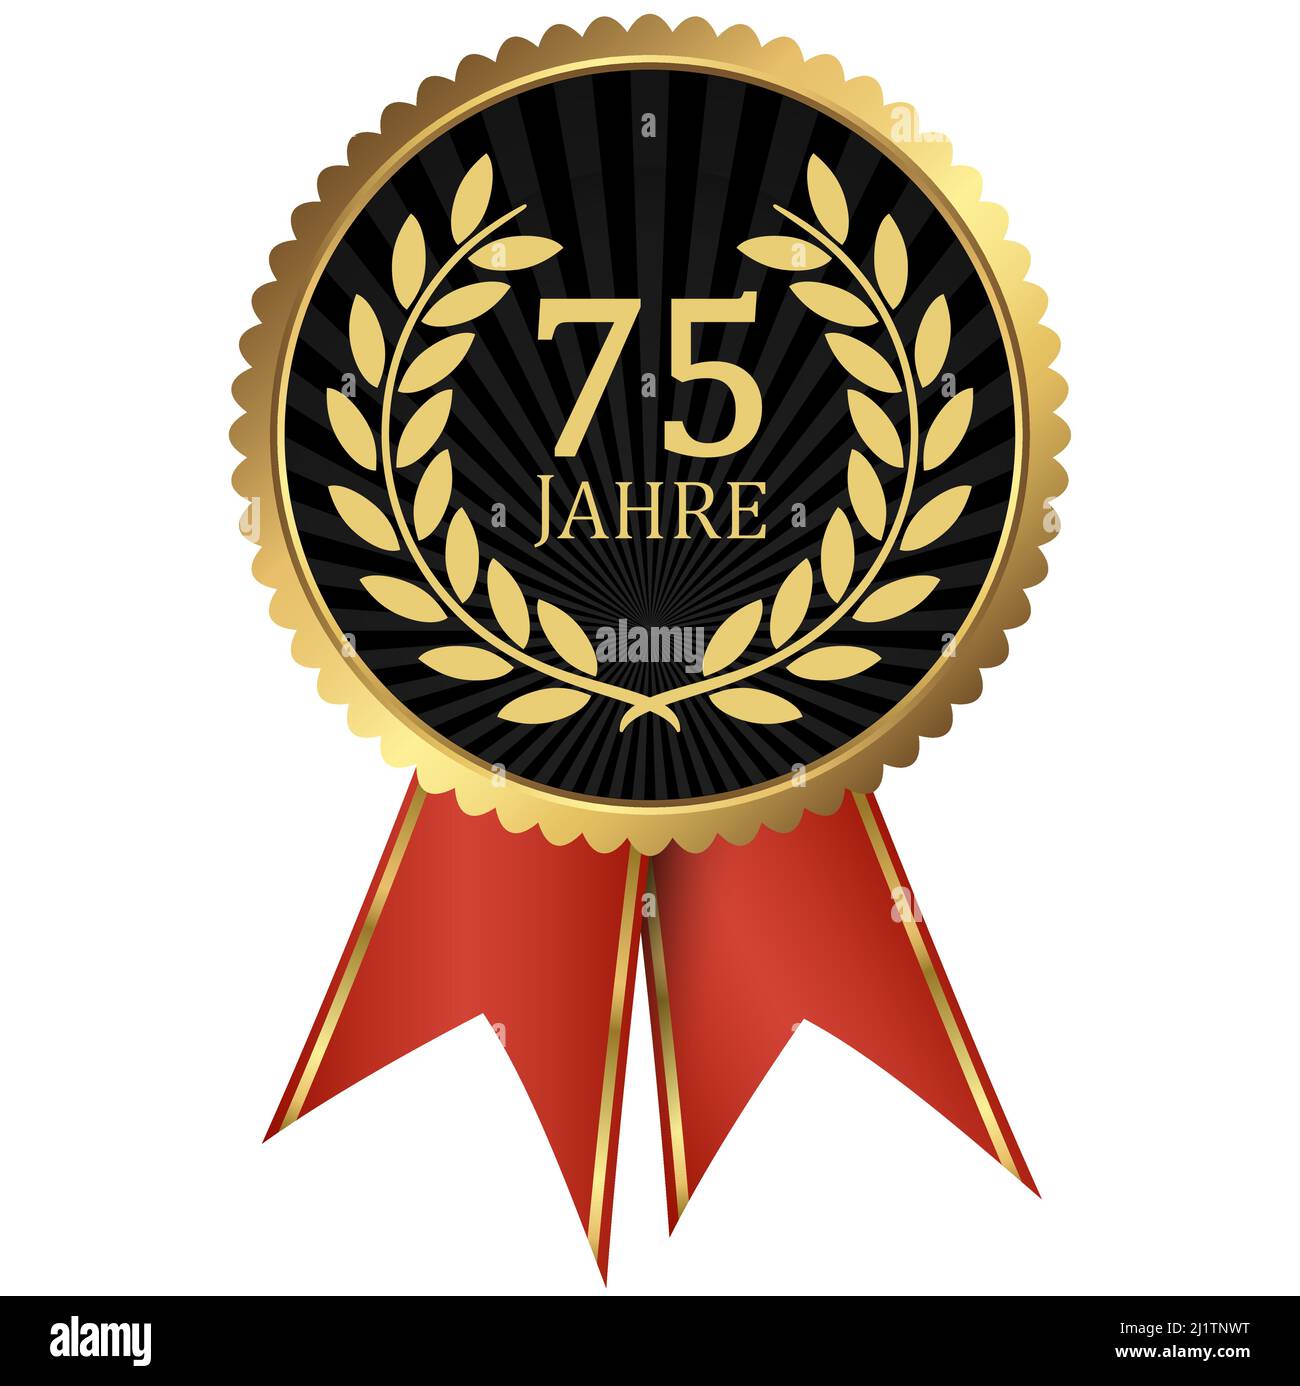 fichier vectoriel eps avec médaillon d'or avec couronne de laurier pour le succès ou jubilé ferme et texte 75 ans (texte allemand) Illustration de Vecteur